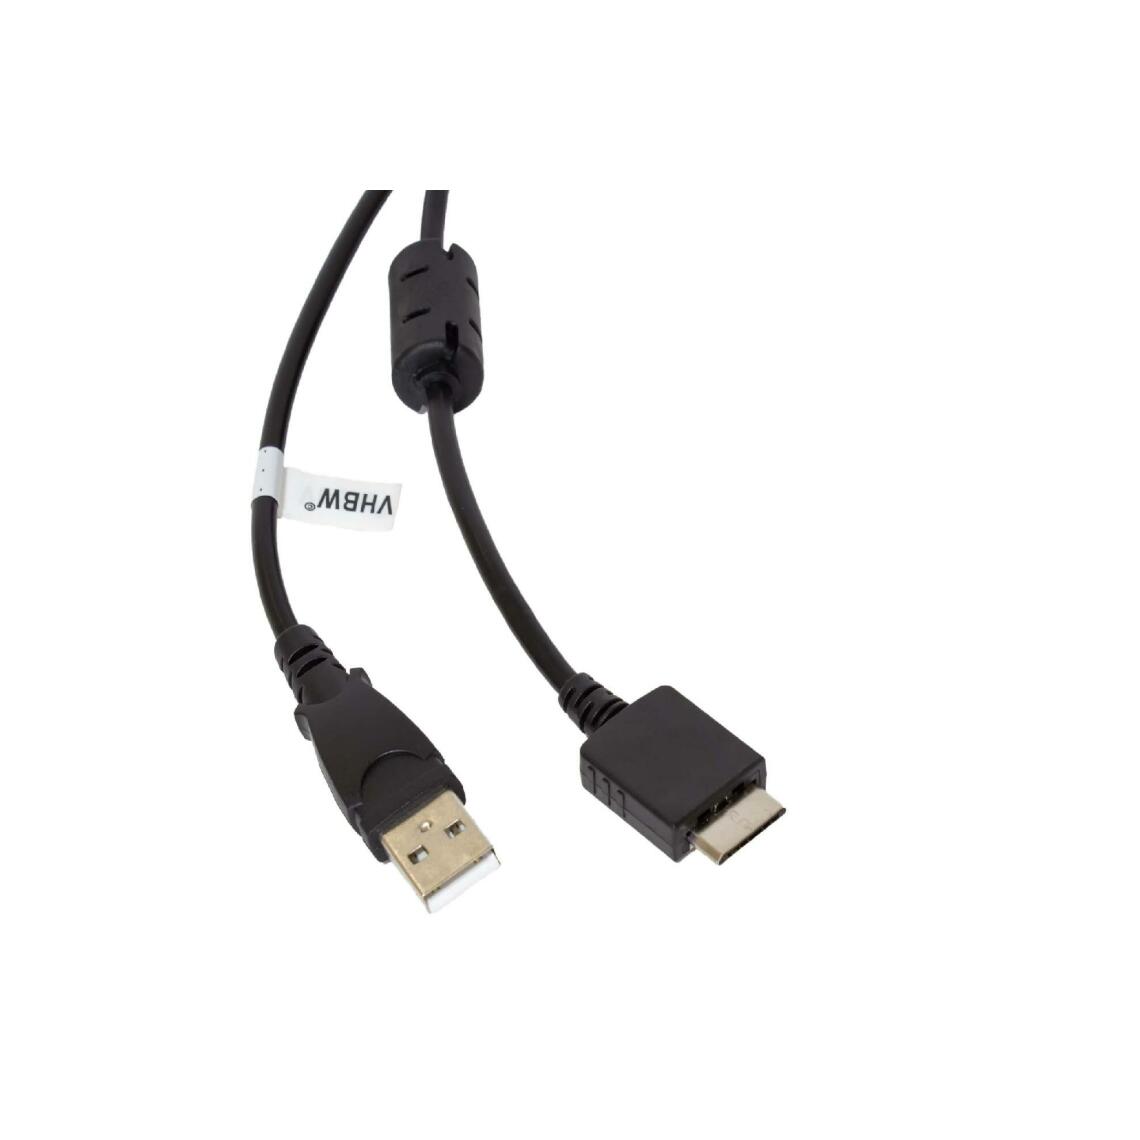 Vhbw - vhbw câble de données USB (type A sur lecteur MP3) câble de chargement compatible avec Sony Walkman NWZ-E473K, NWZ-E474 lecteur MP3 - noir, 150cm - Alimentation modulaire